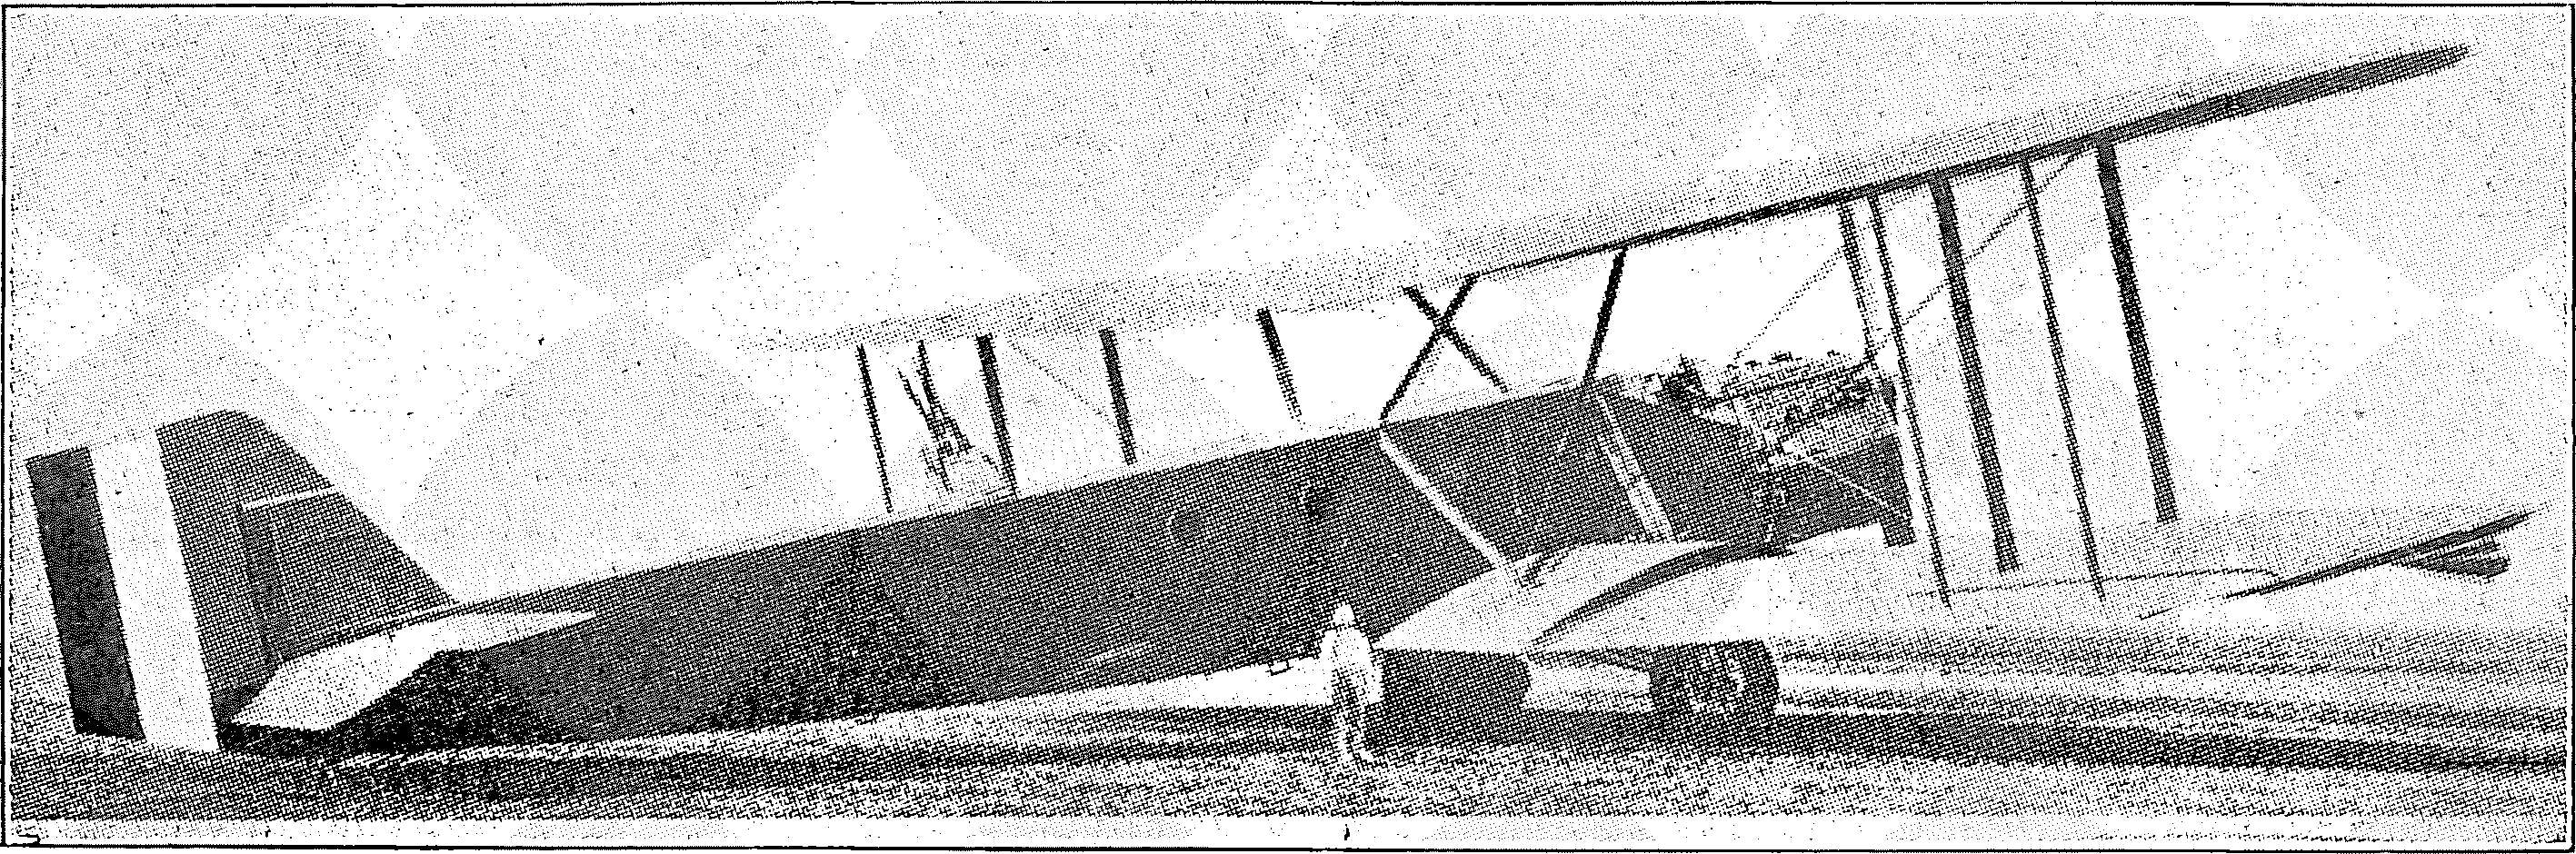 Segelflug, Motorflug und Modellflug sowie Luftfahrt und Luftverkehr im Deutschen Reich (Weimarer Republik) im Jahre 1927